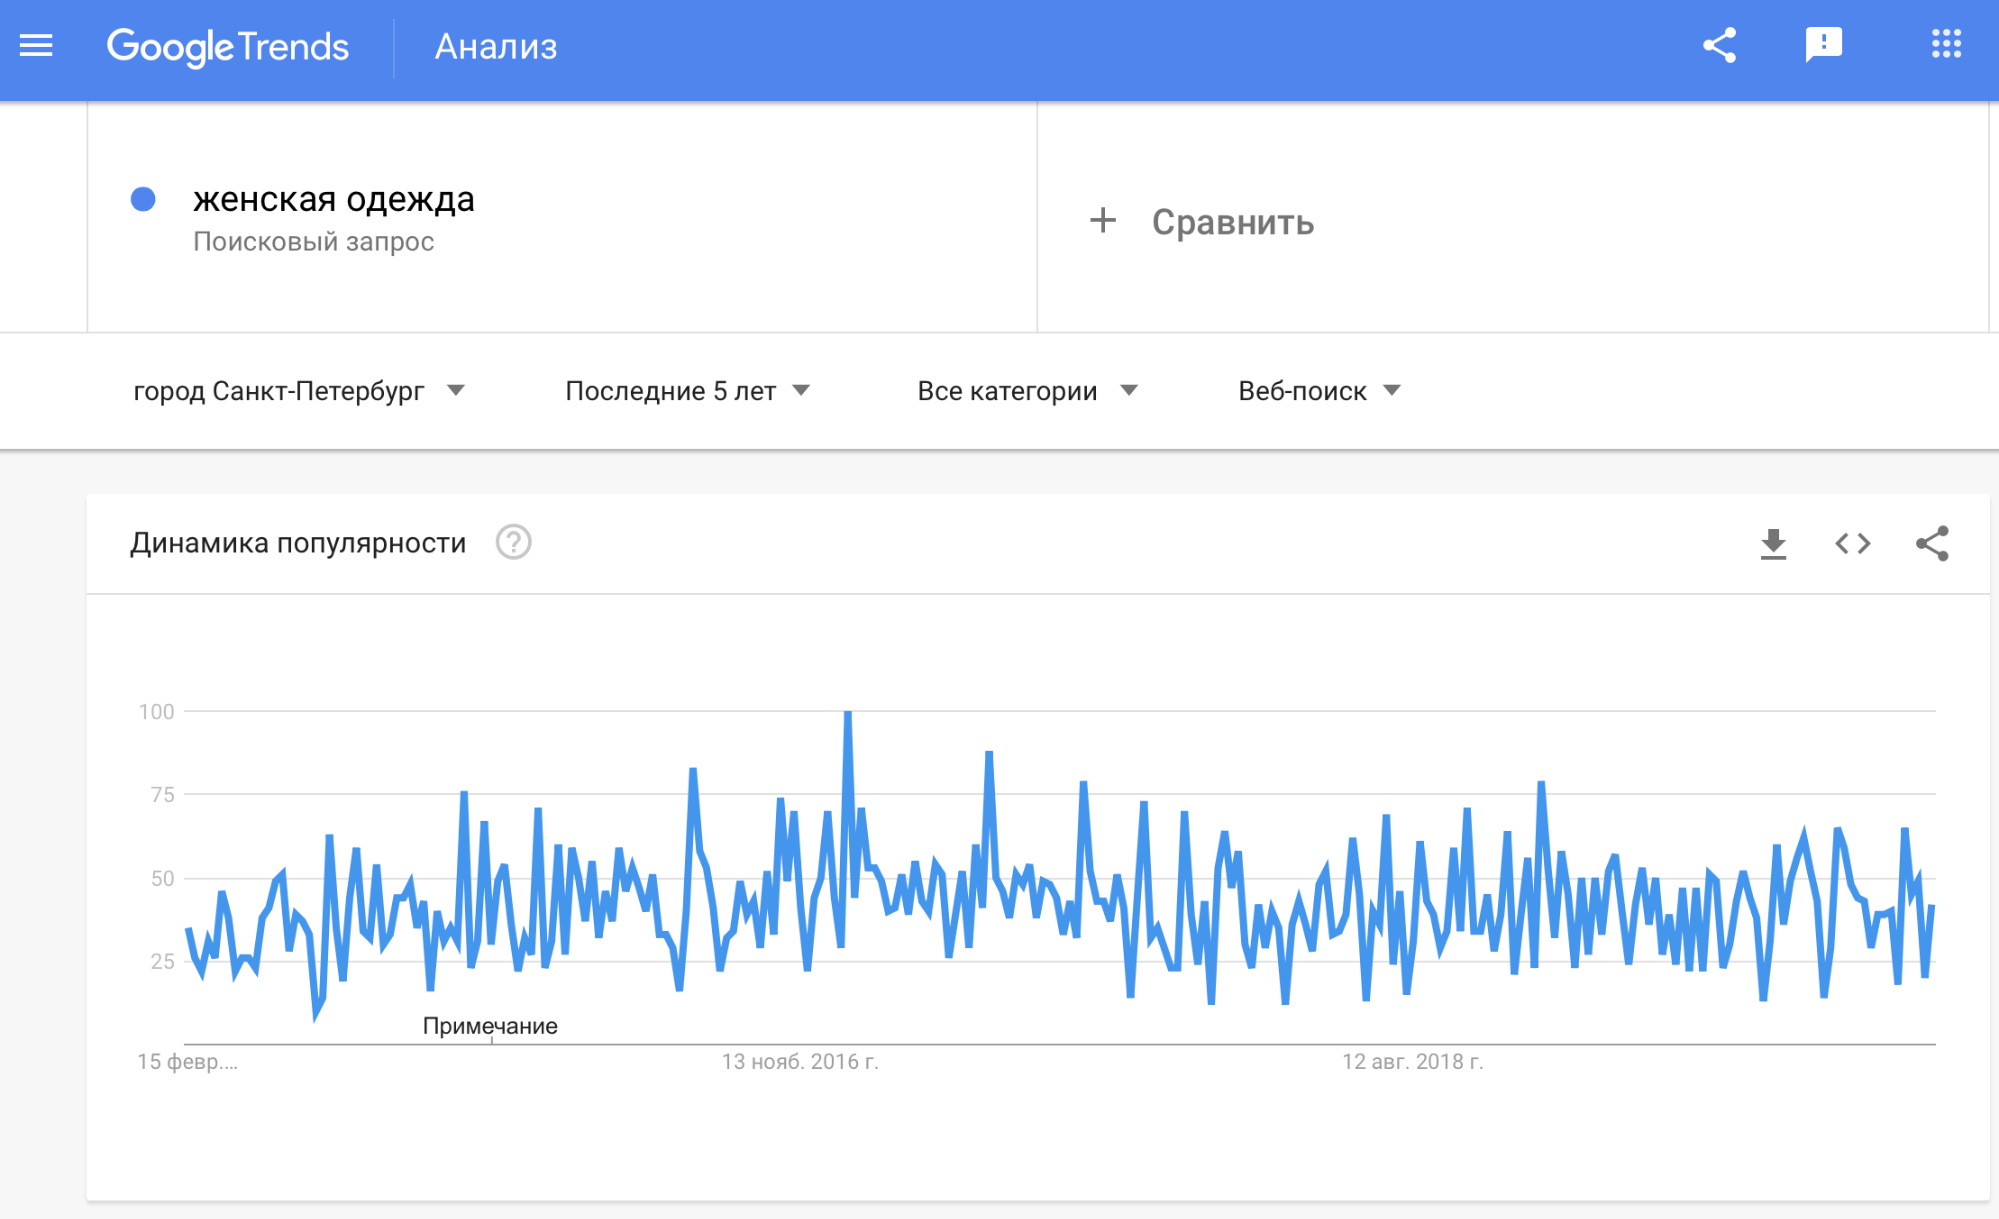 Динамика популярности Google Trends